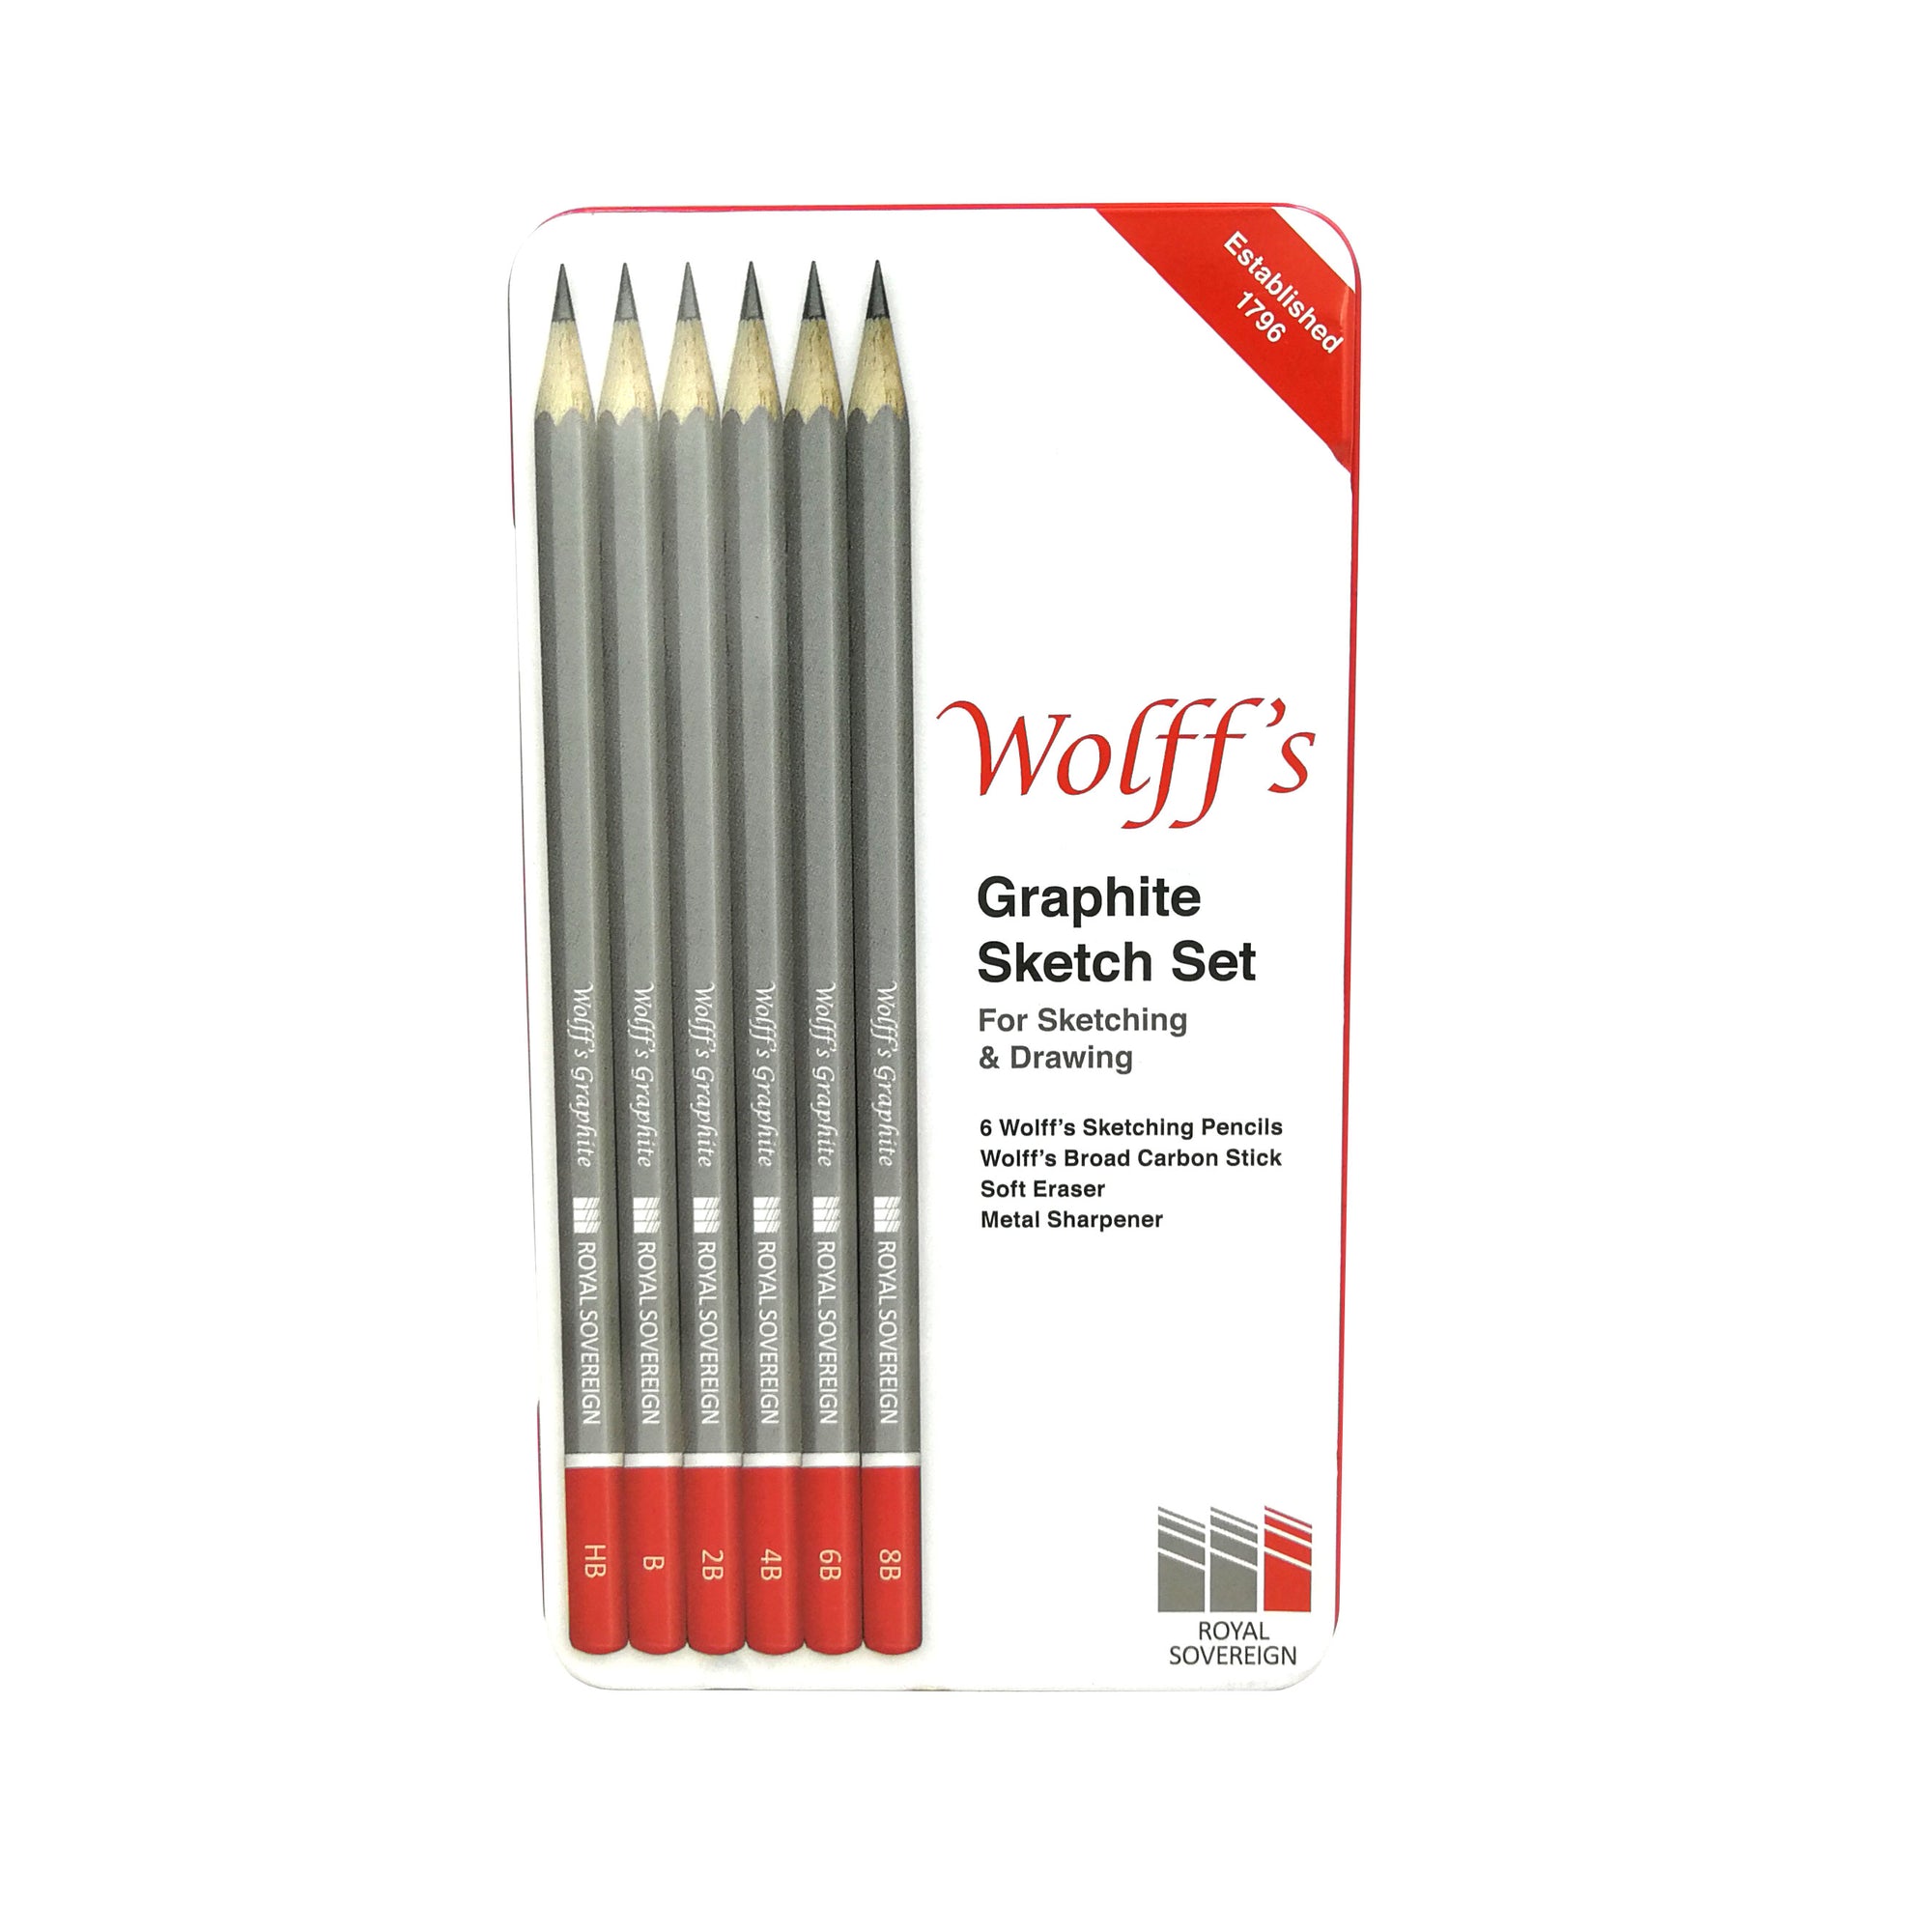 Crayon - Graphite - Noir - STAEDTLER - HB/N°2 - Mars® - Art-Nr.120